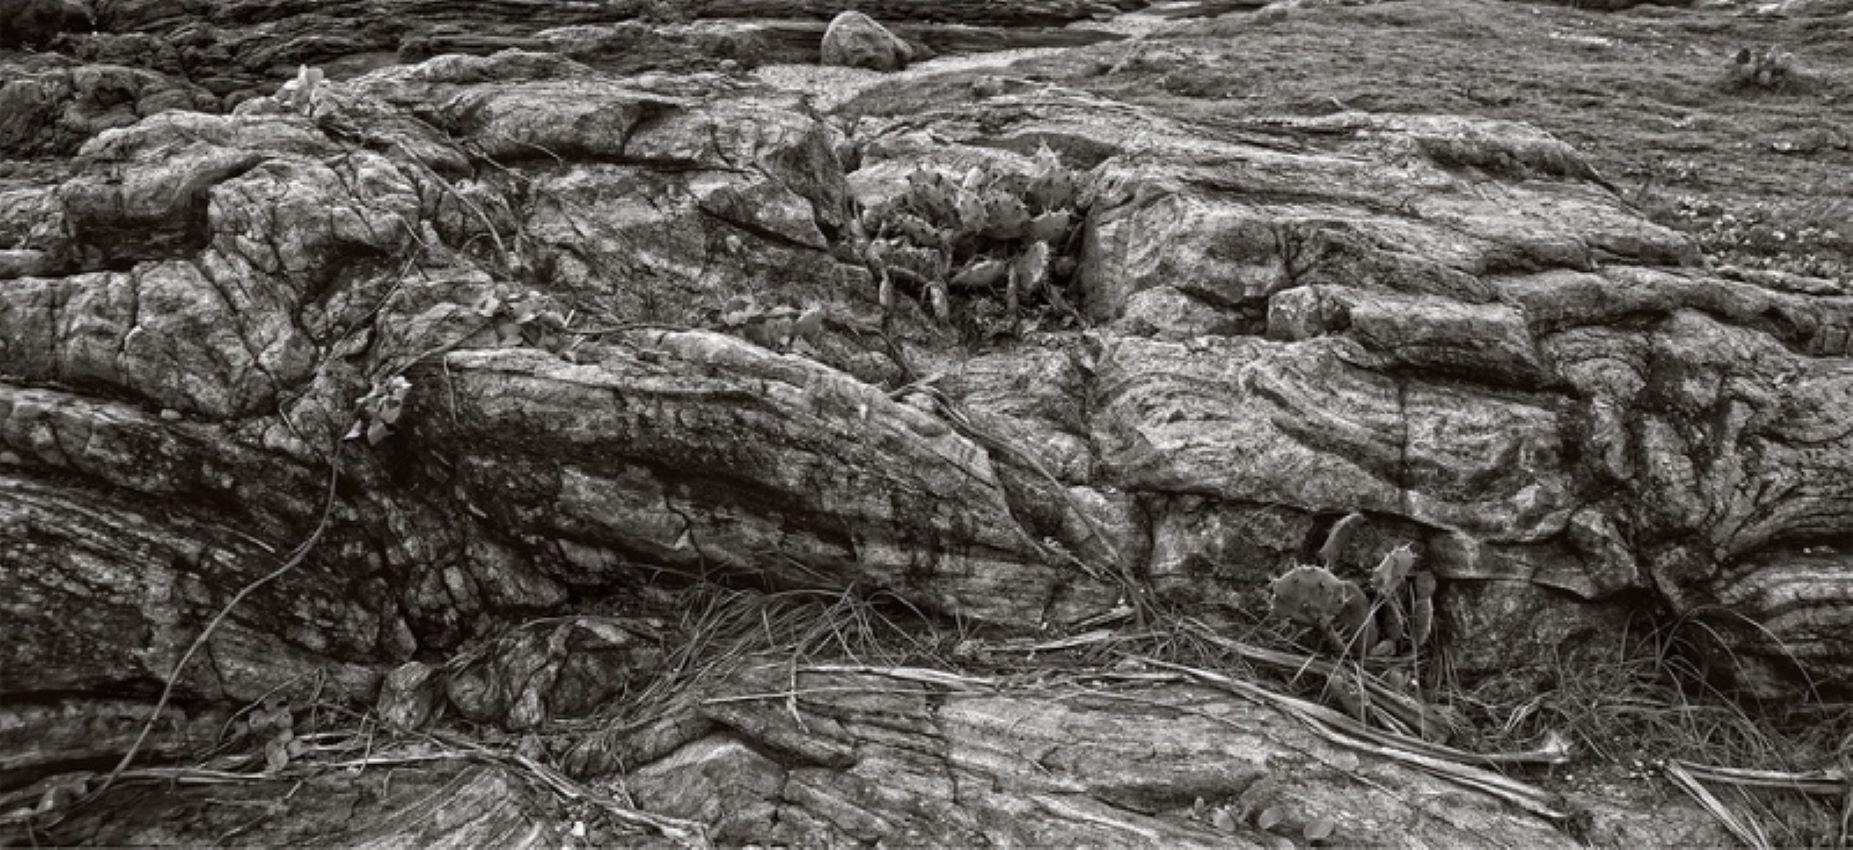 Non pardonné

Rochers et cactus près d'un littoral. 

par Stuart Möller

Né à Kaboul, d'origine allemande et anglo-indienne, il a grandi aux quatre coins du monde,
Stuart Möller est un photographe d'art dont les images se caractérisent souvent par